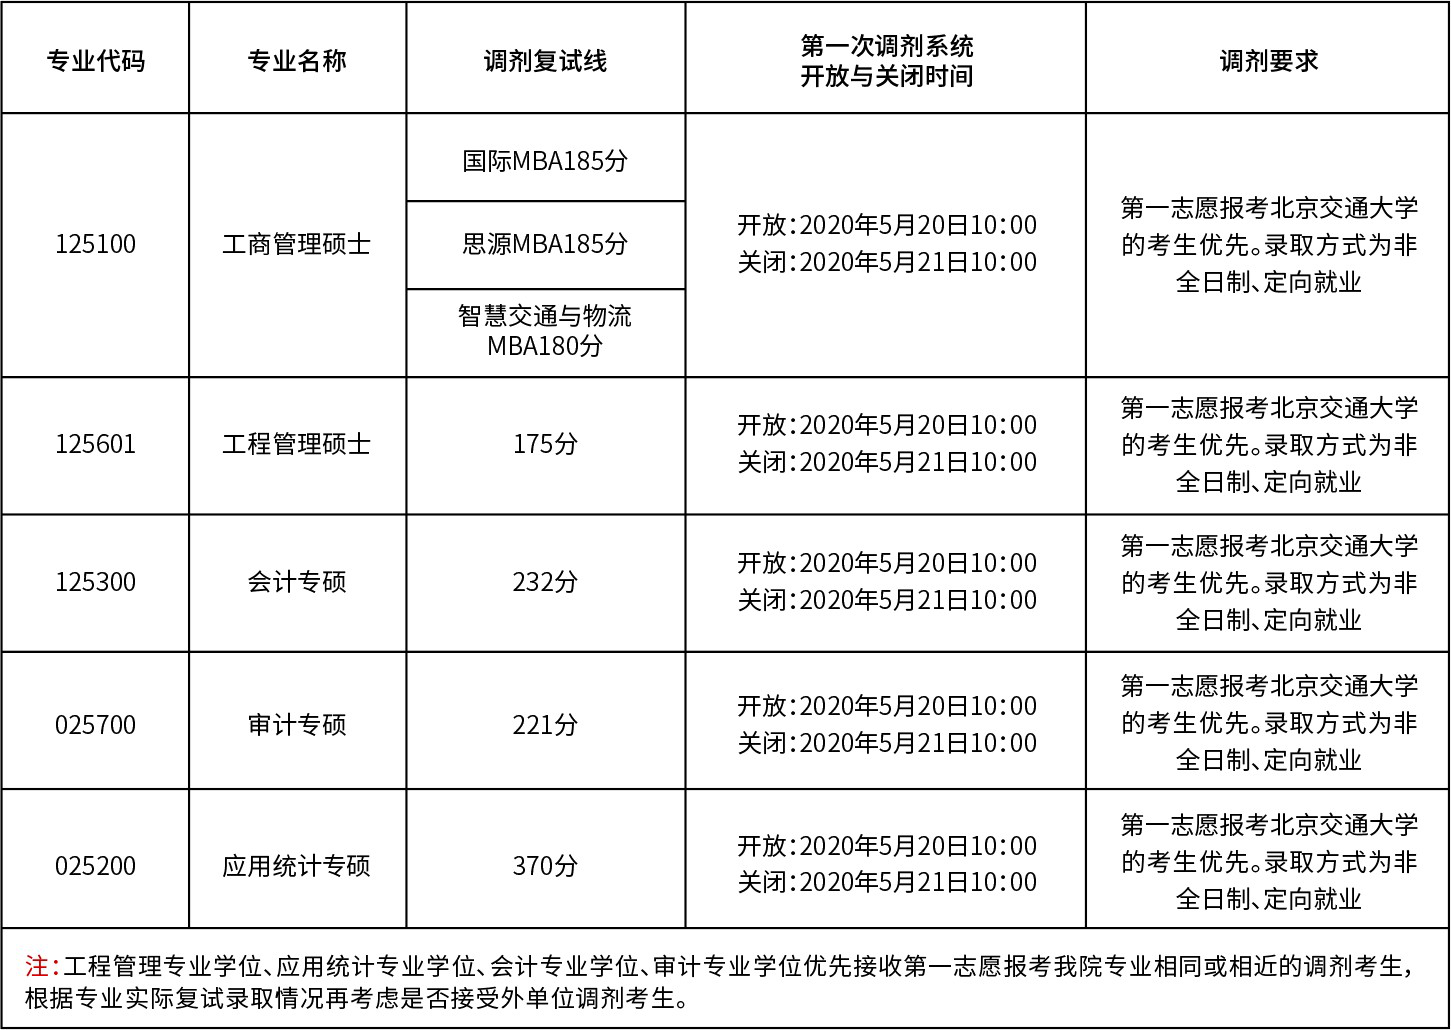 2020年北京交通大学考研调剂安排公布